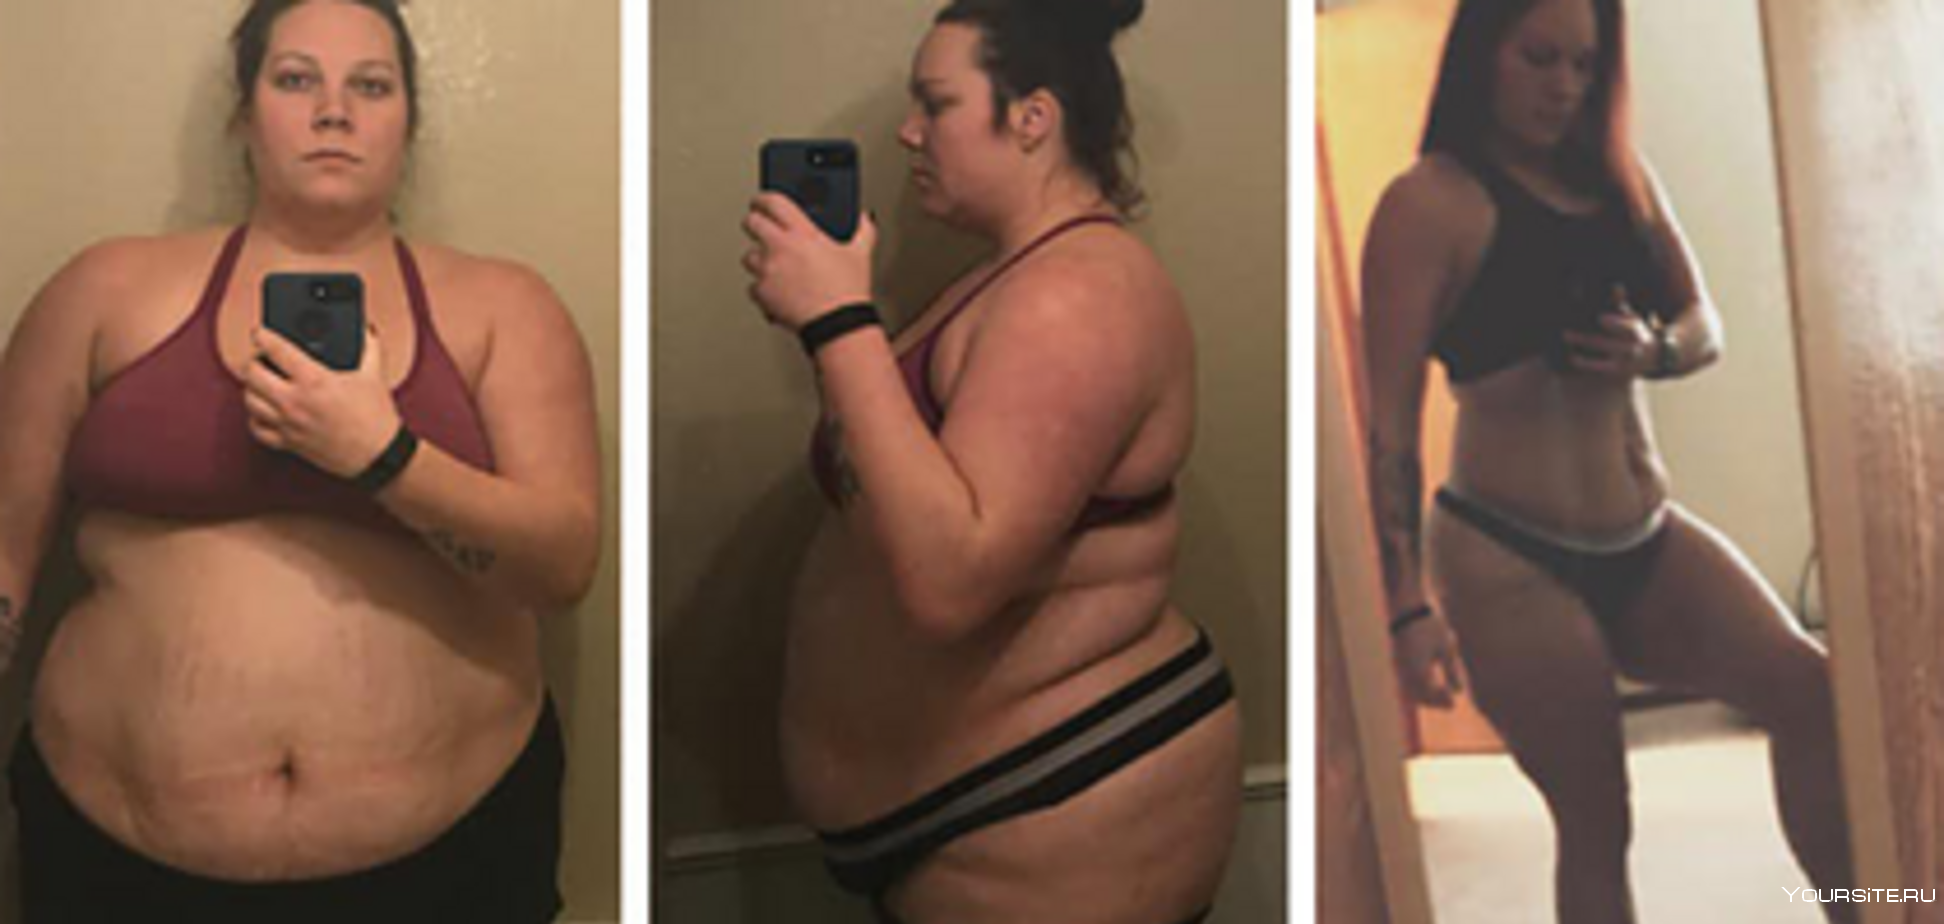 20 кг 40 60 100. Похудение до и после. До и после похудения девушки. Похудение до и после фото. Девушка худеет.